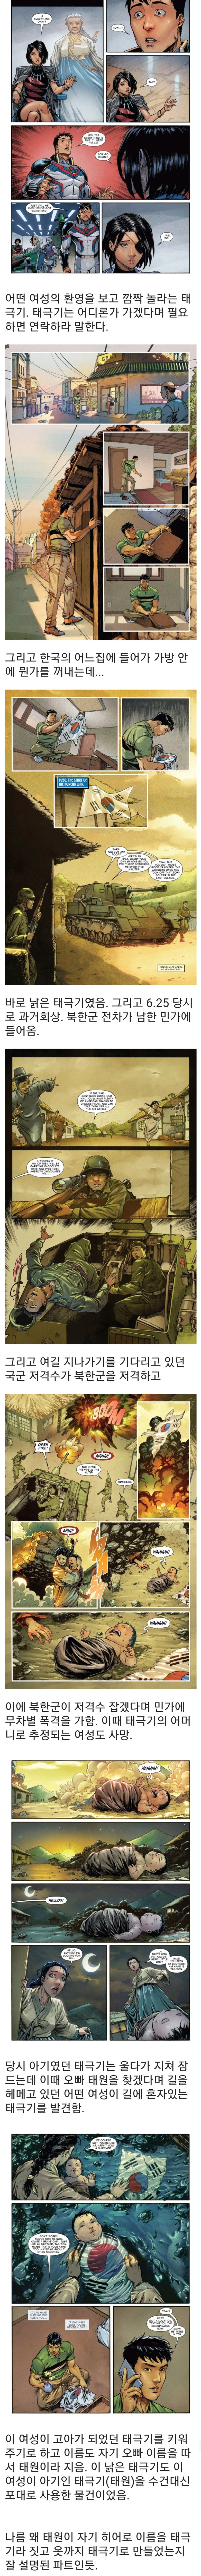 마블)한국인 히어로 ''태극기''의 기원